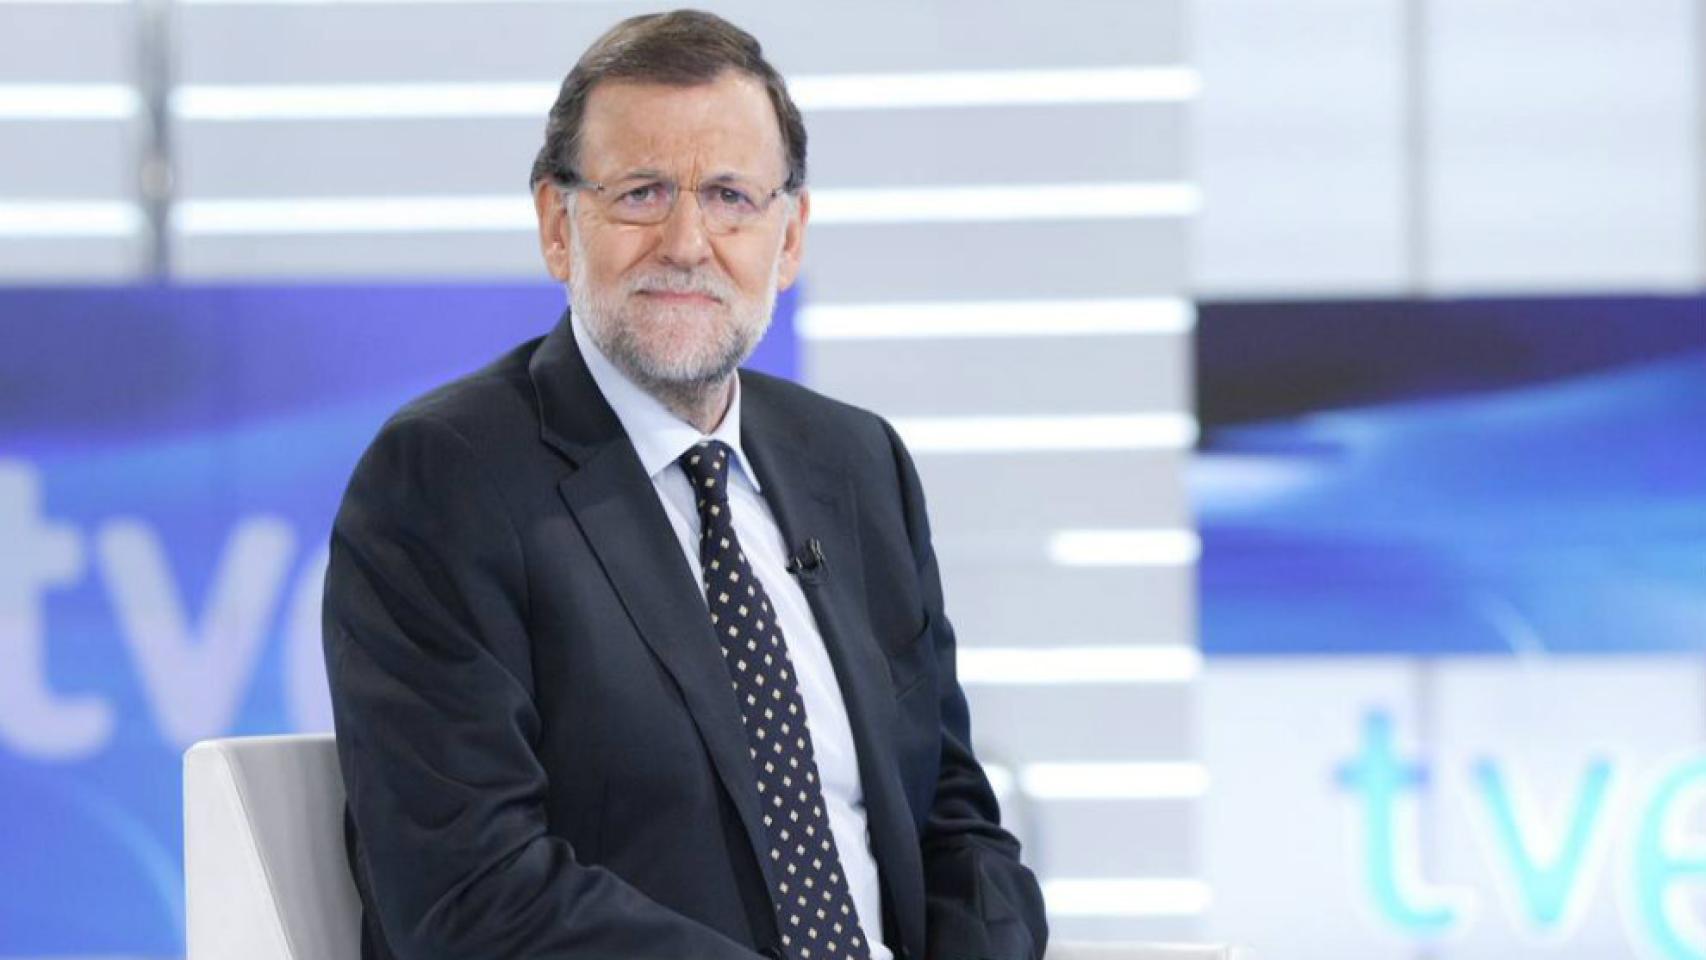 Rajoy, de gira por las teles para frenar el efecto Ciudadanos